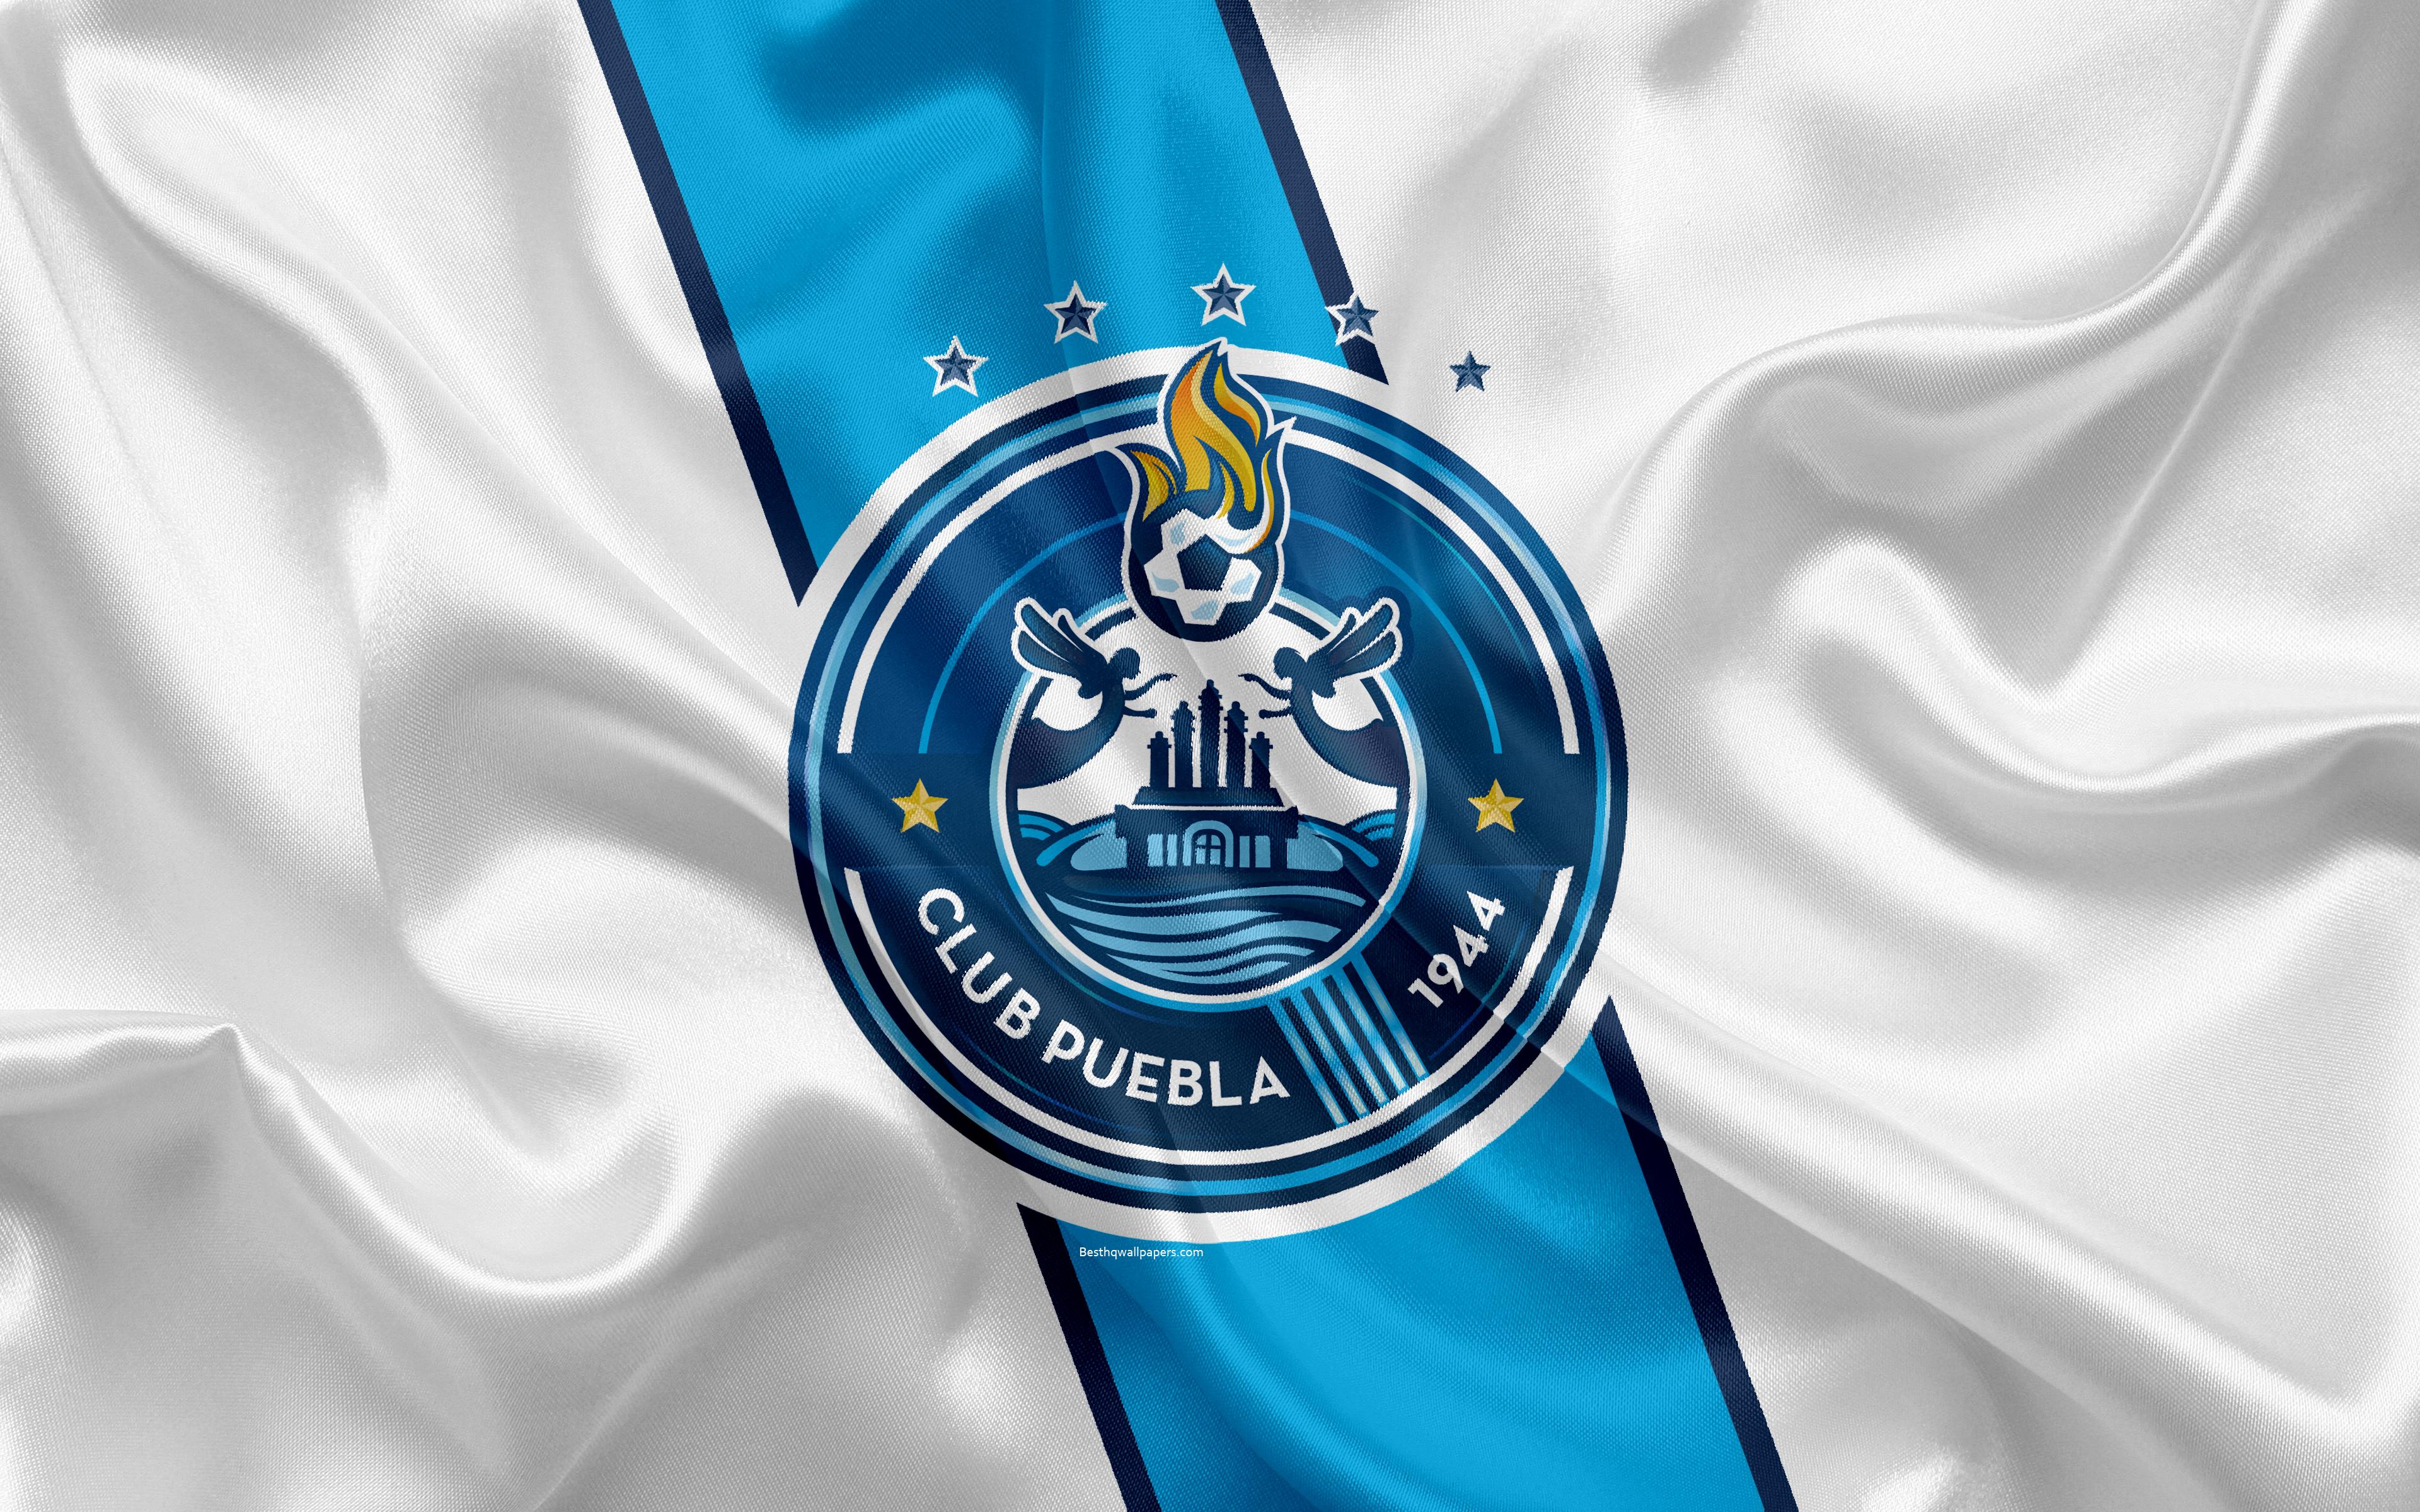 Download wallpaper Puebla FC, 4K, Mexican Football Club, emblem